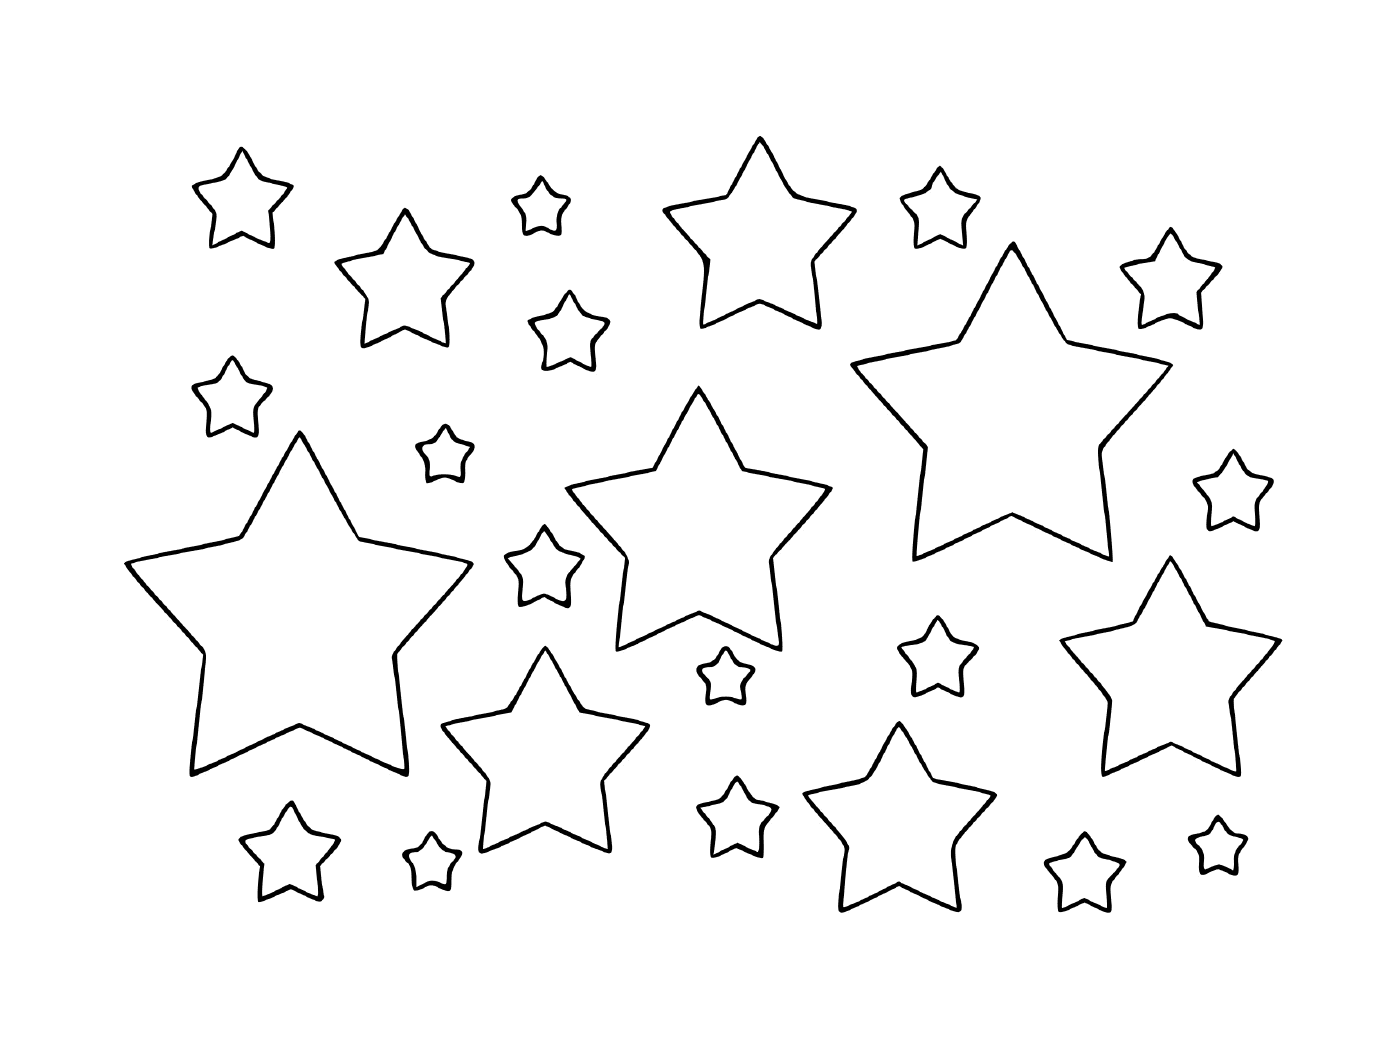  A world full of stars 